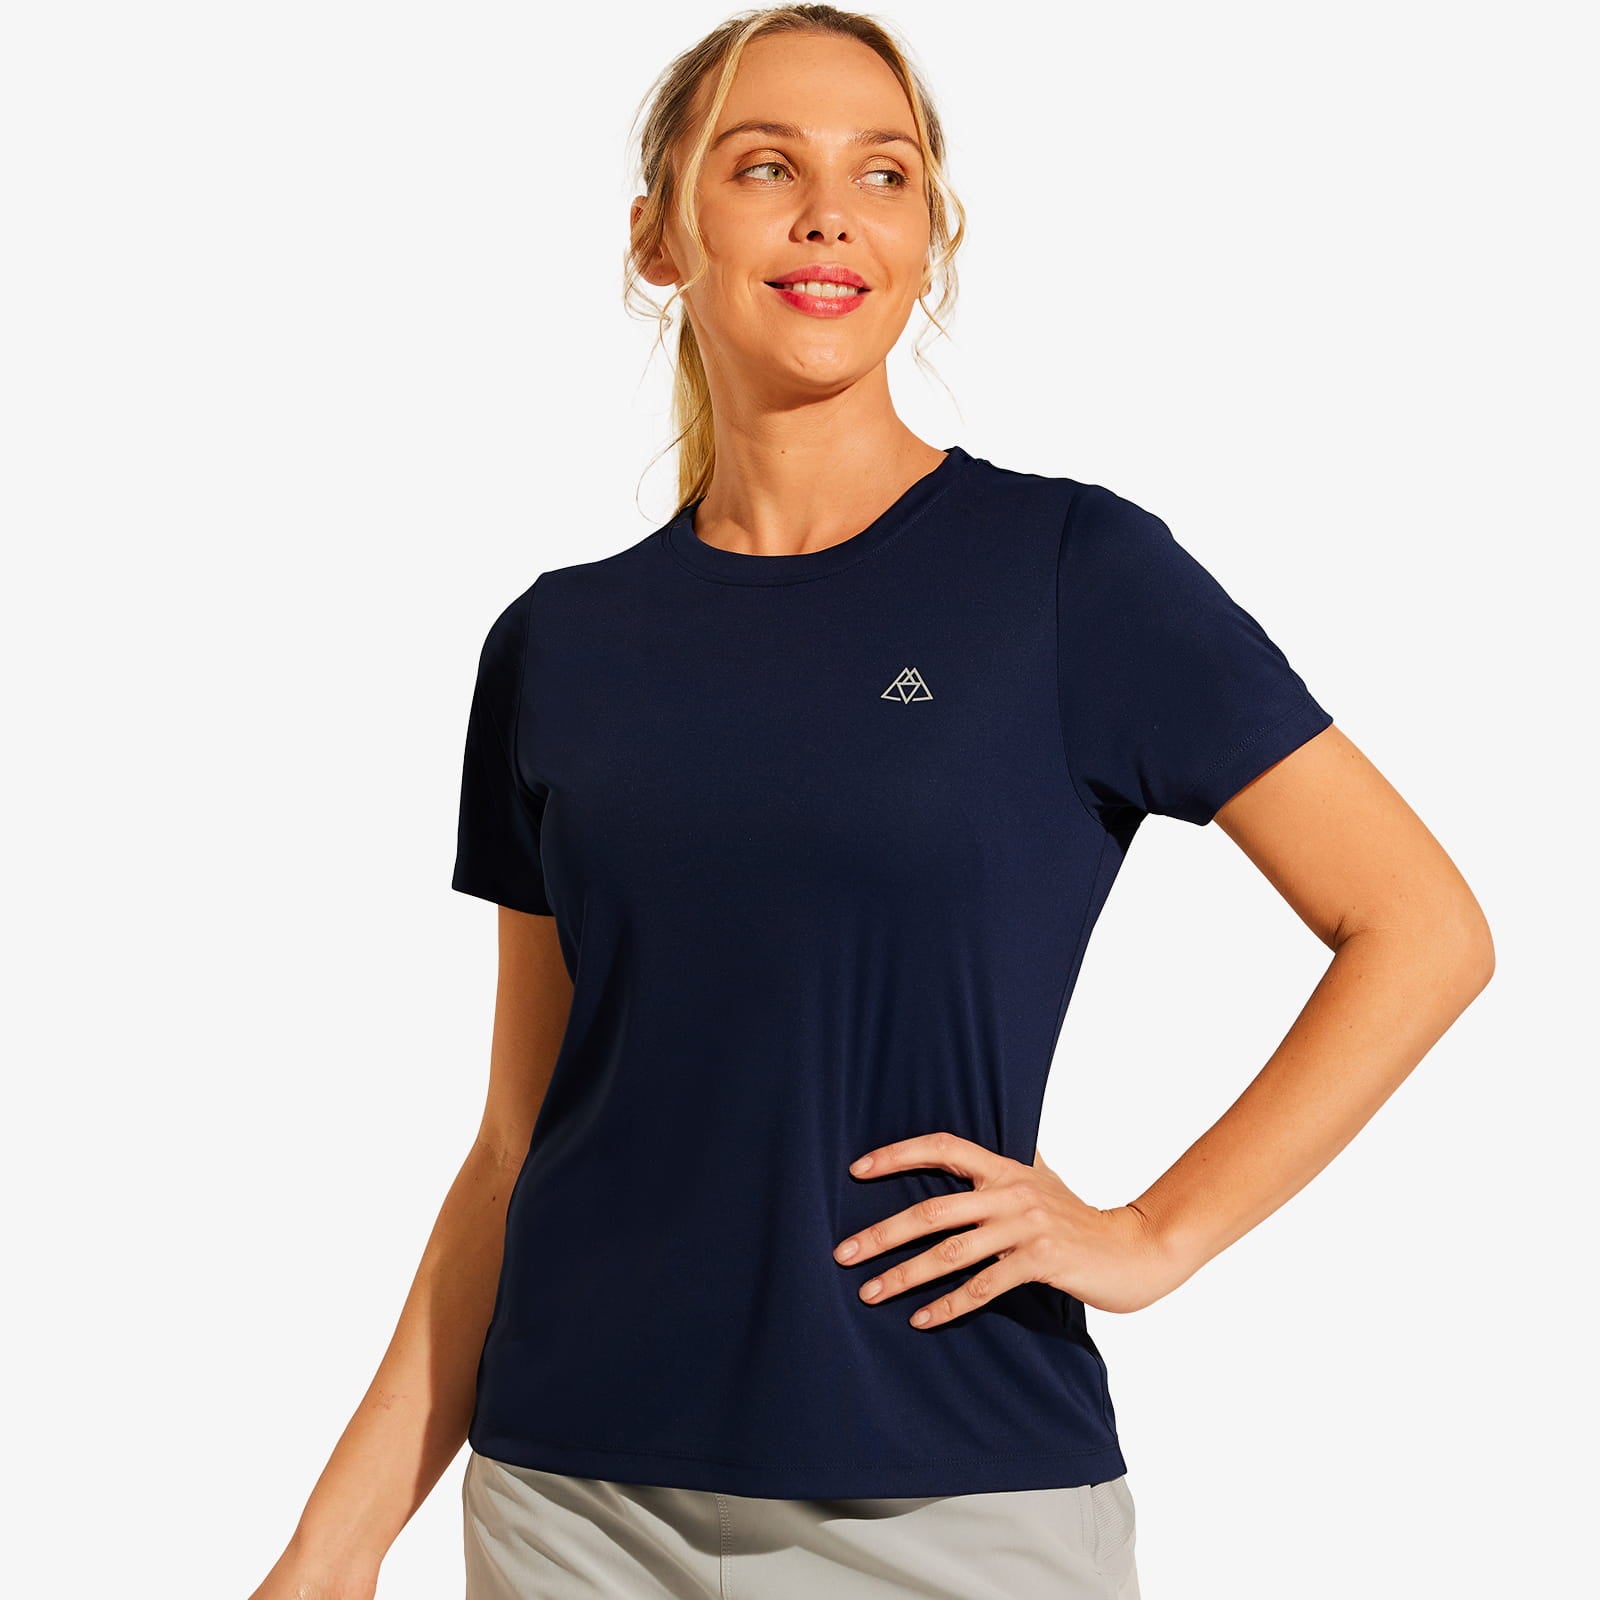 T-shirt sport femme - pelote basque - Massy